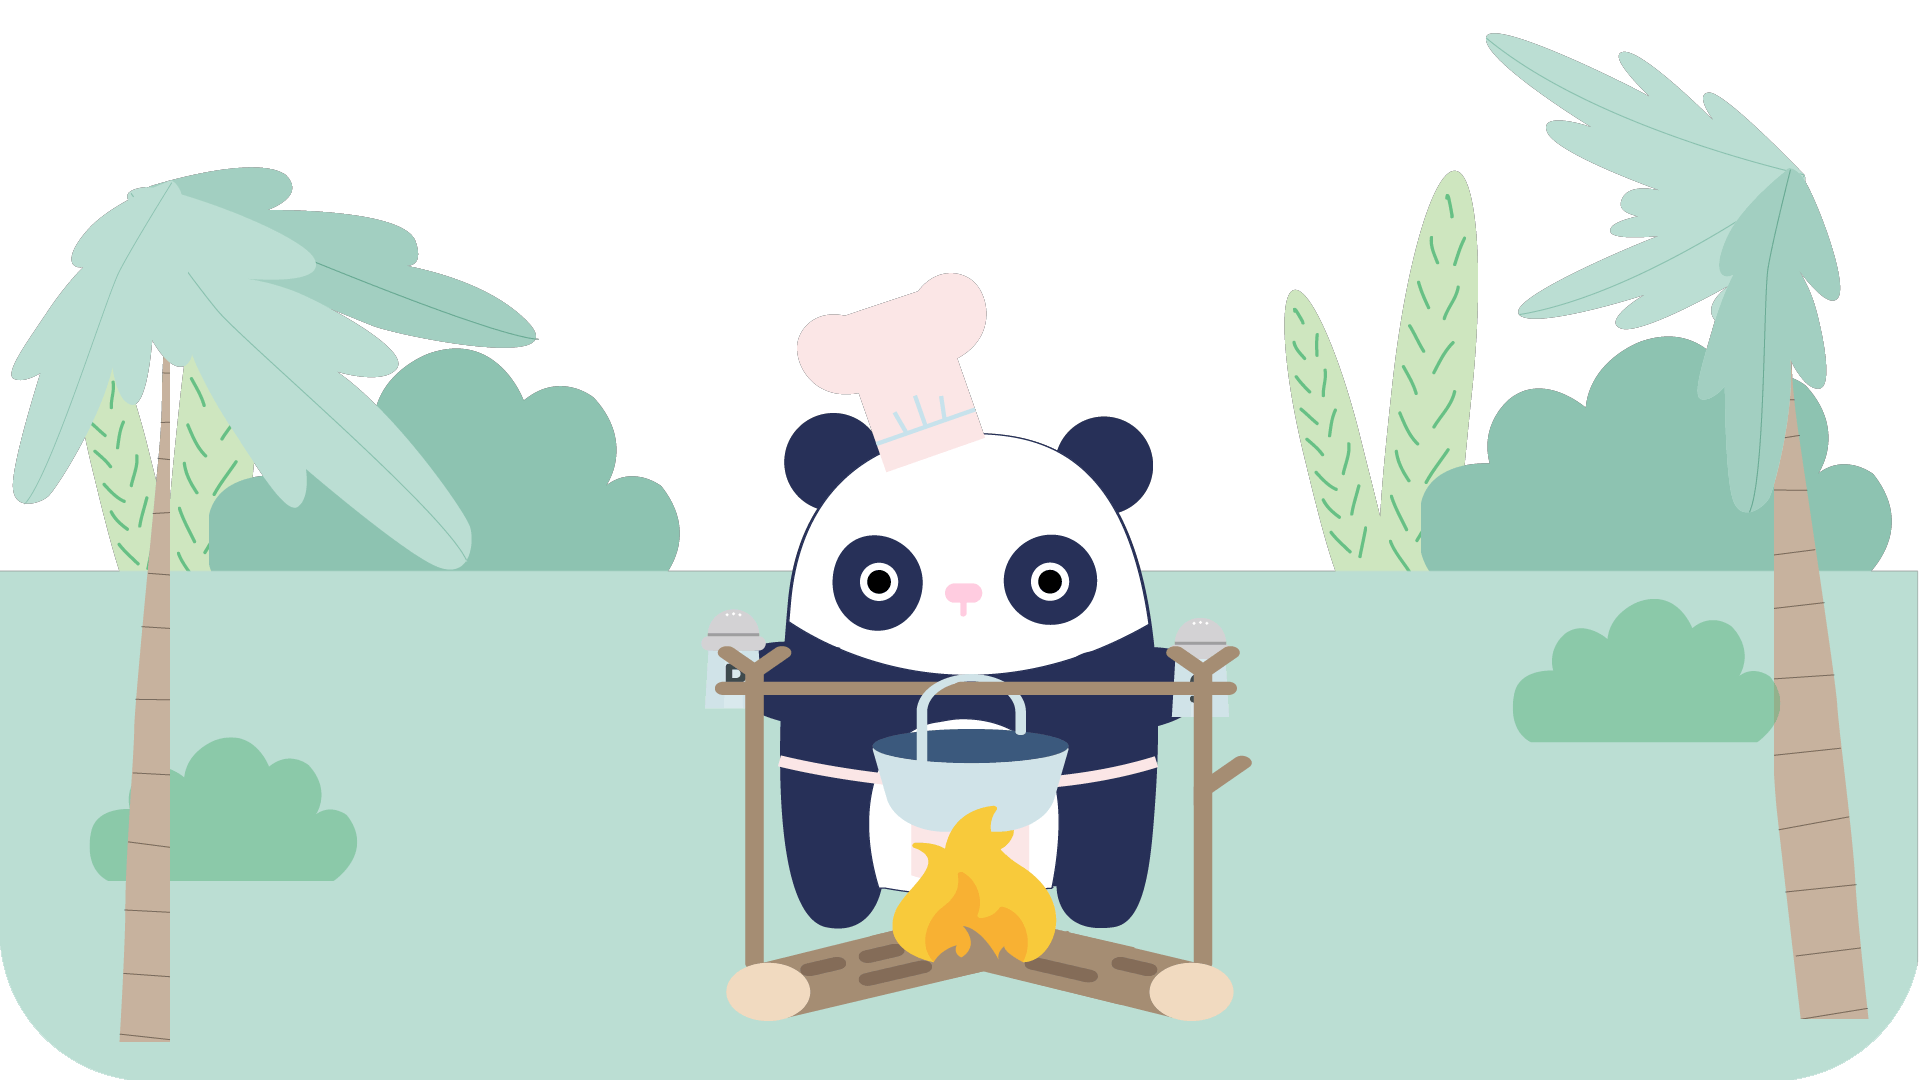 Ricebamboo